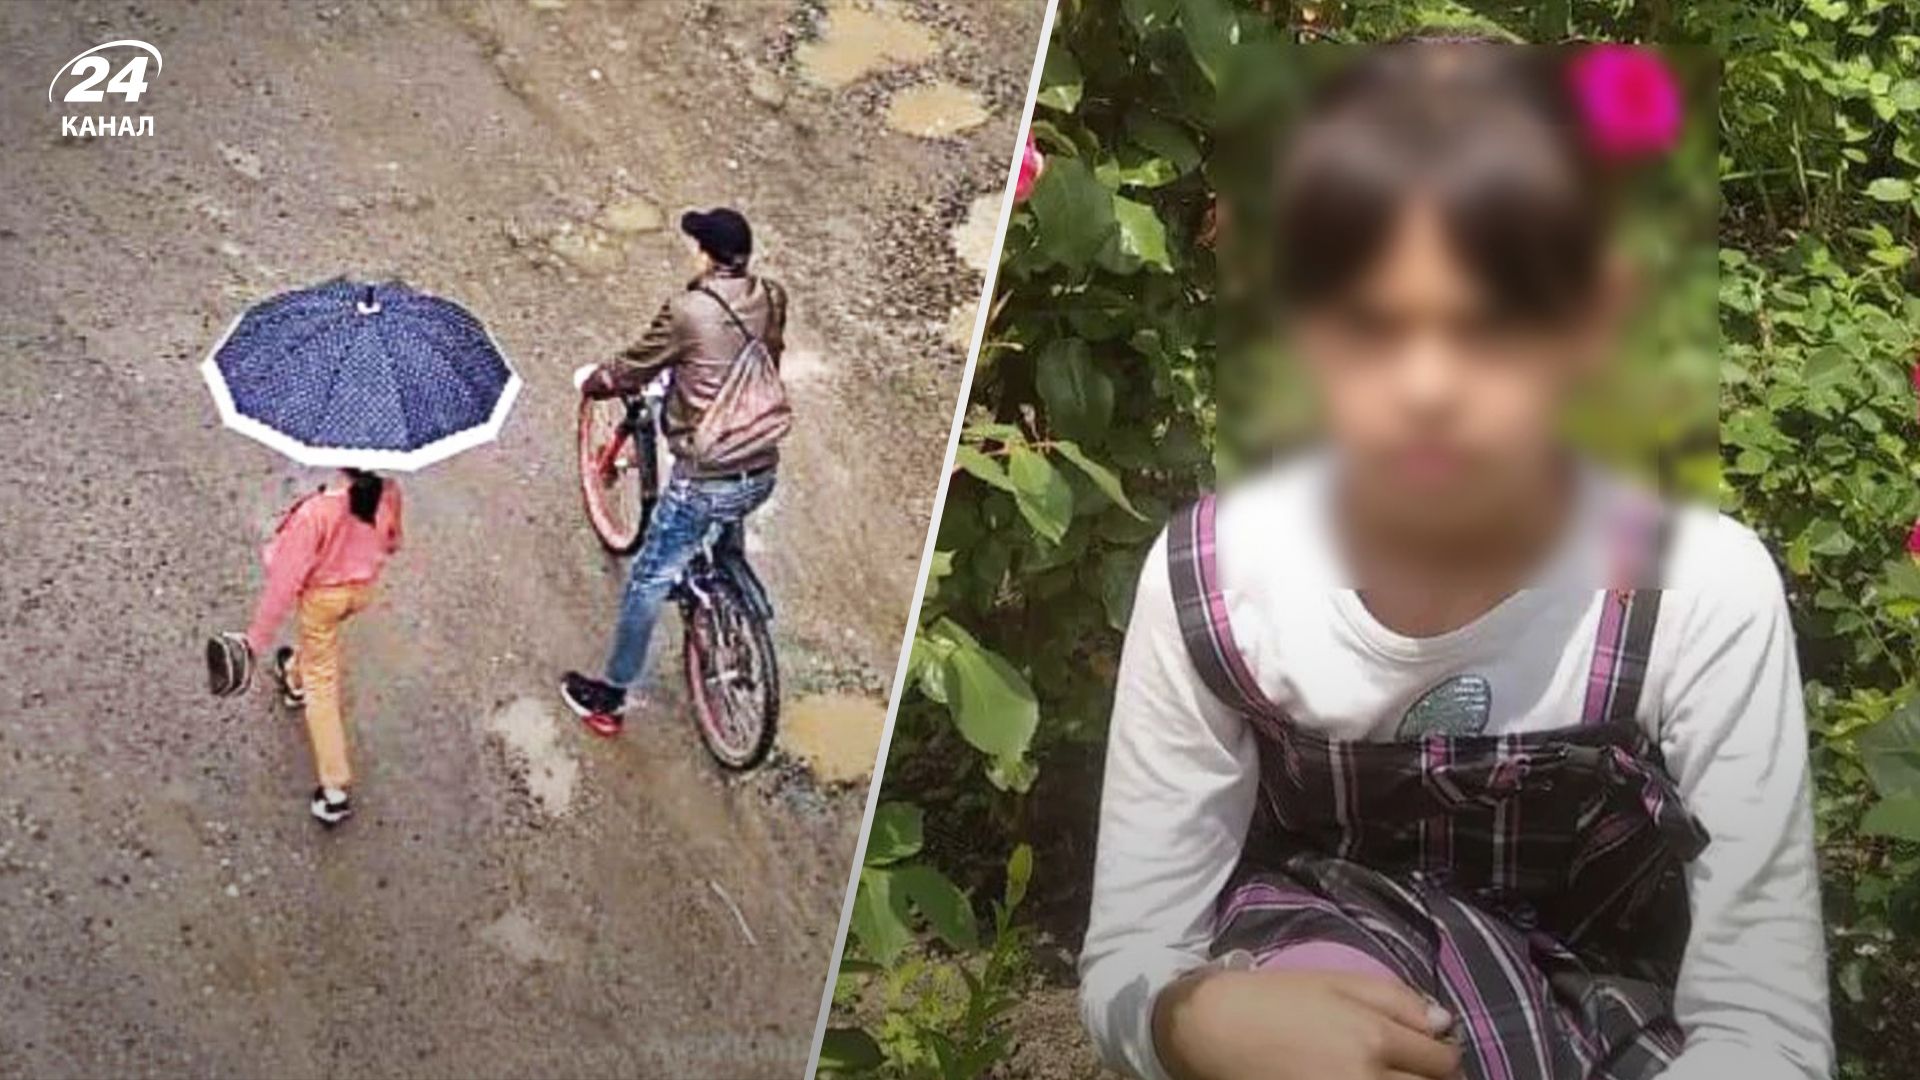 Раніше нападав та ґвалтував жінок: деталі жорстокого вбивства 9-річної дівчинки на Прикарпатті - 24 Канал